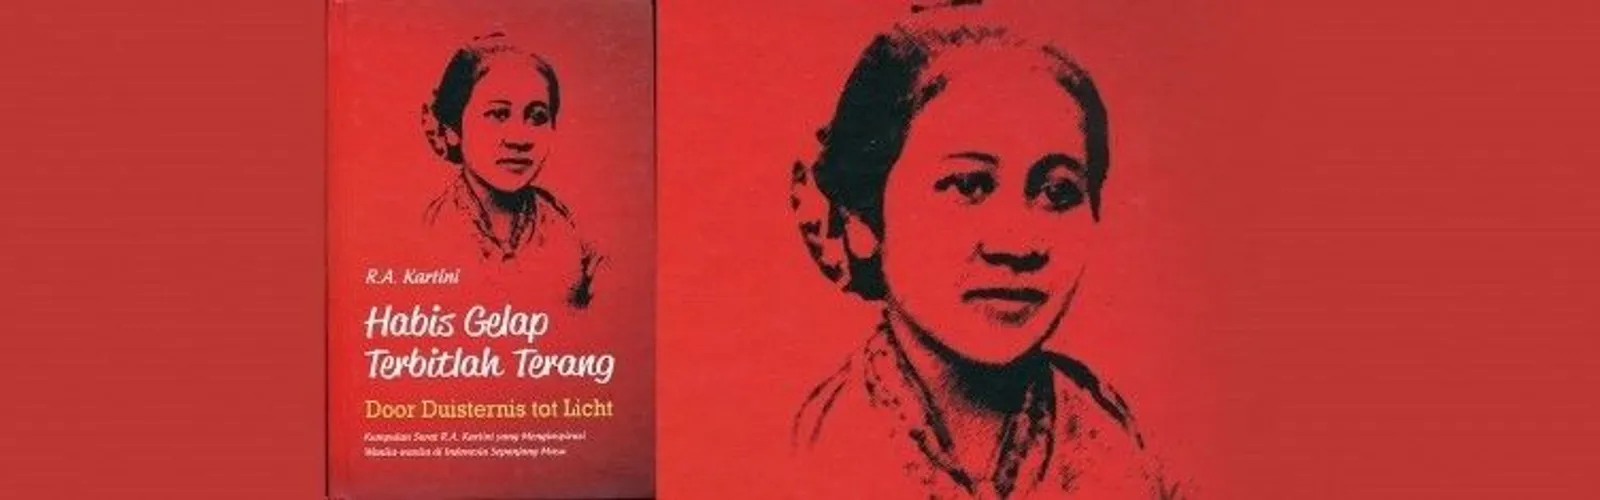 Jarang Diketahui, 7 Fakta Tentang R.A. Kartini & Kehidupan Pribadinya